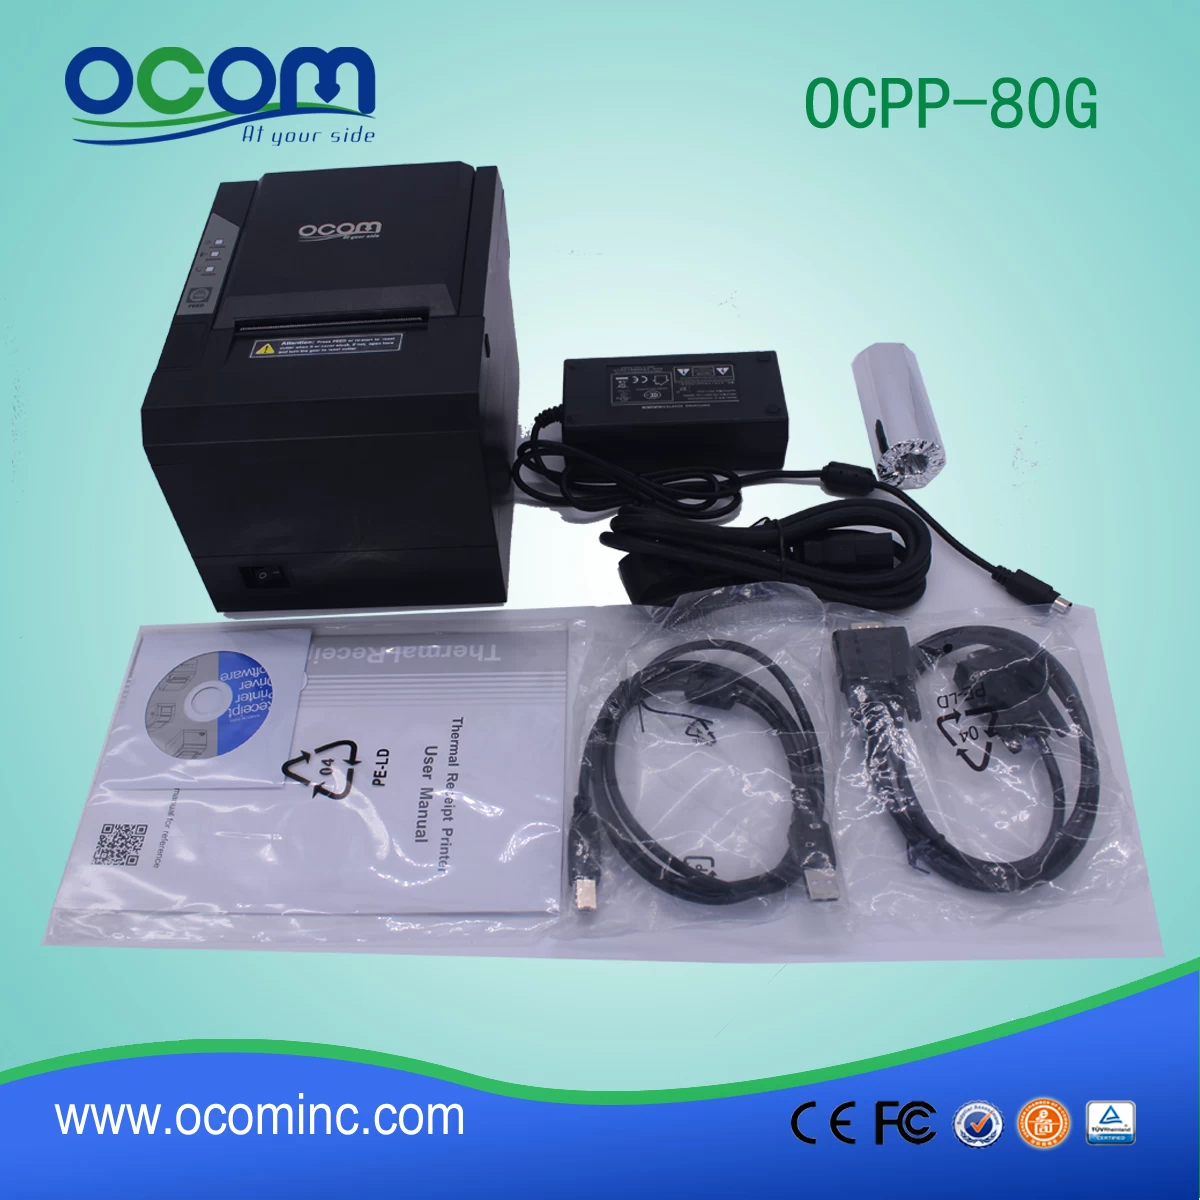 usb serial lan pos receipt printer price (OCPP-80G)